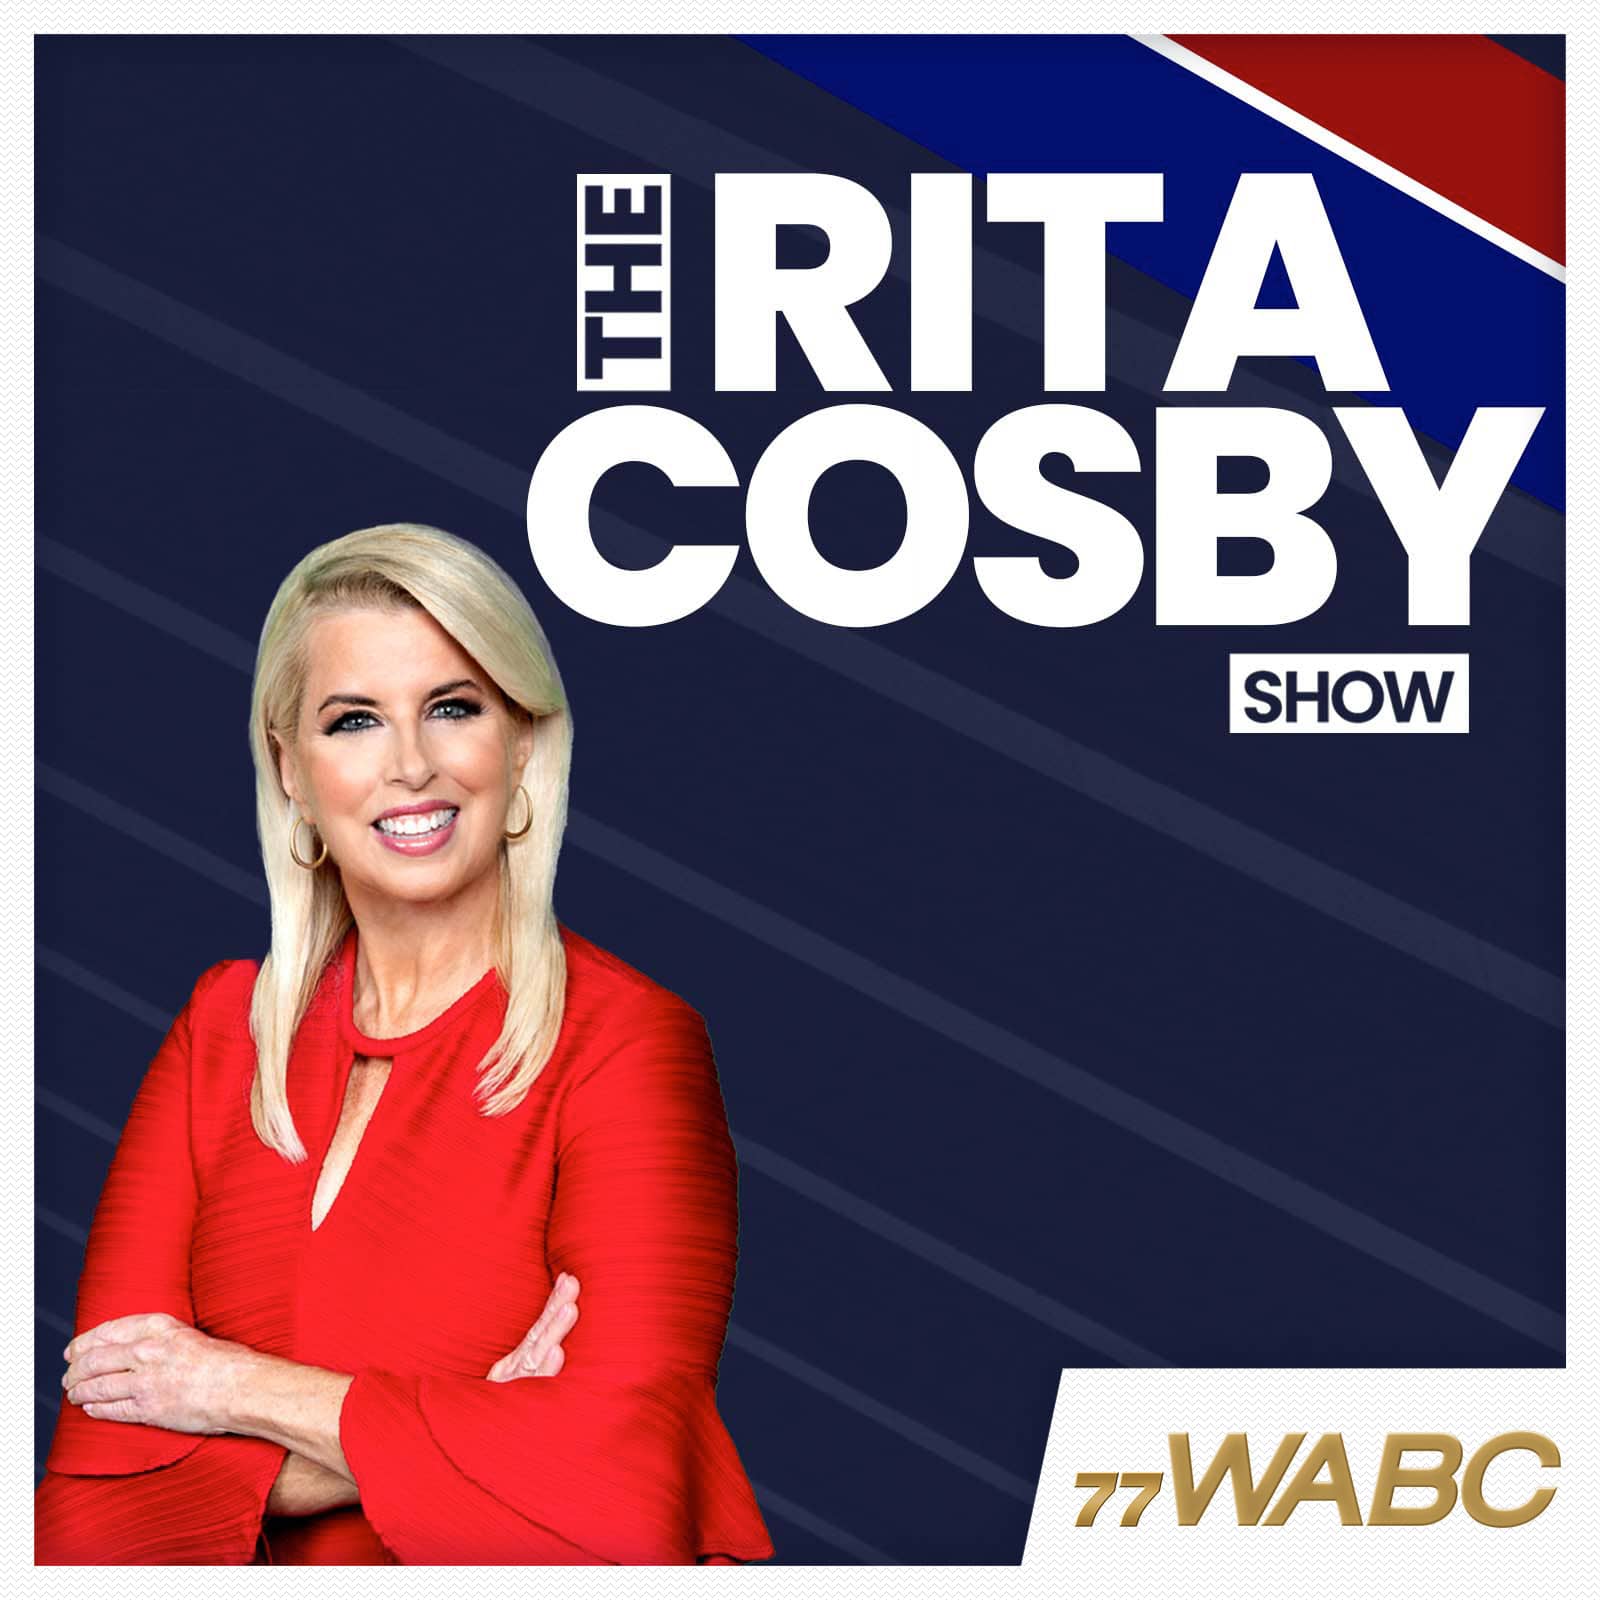 rita-cosby-podcast-new-logo454001